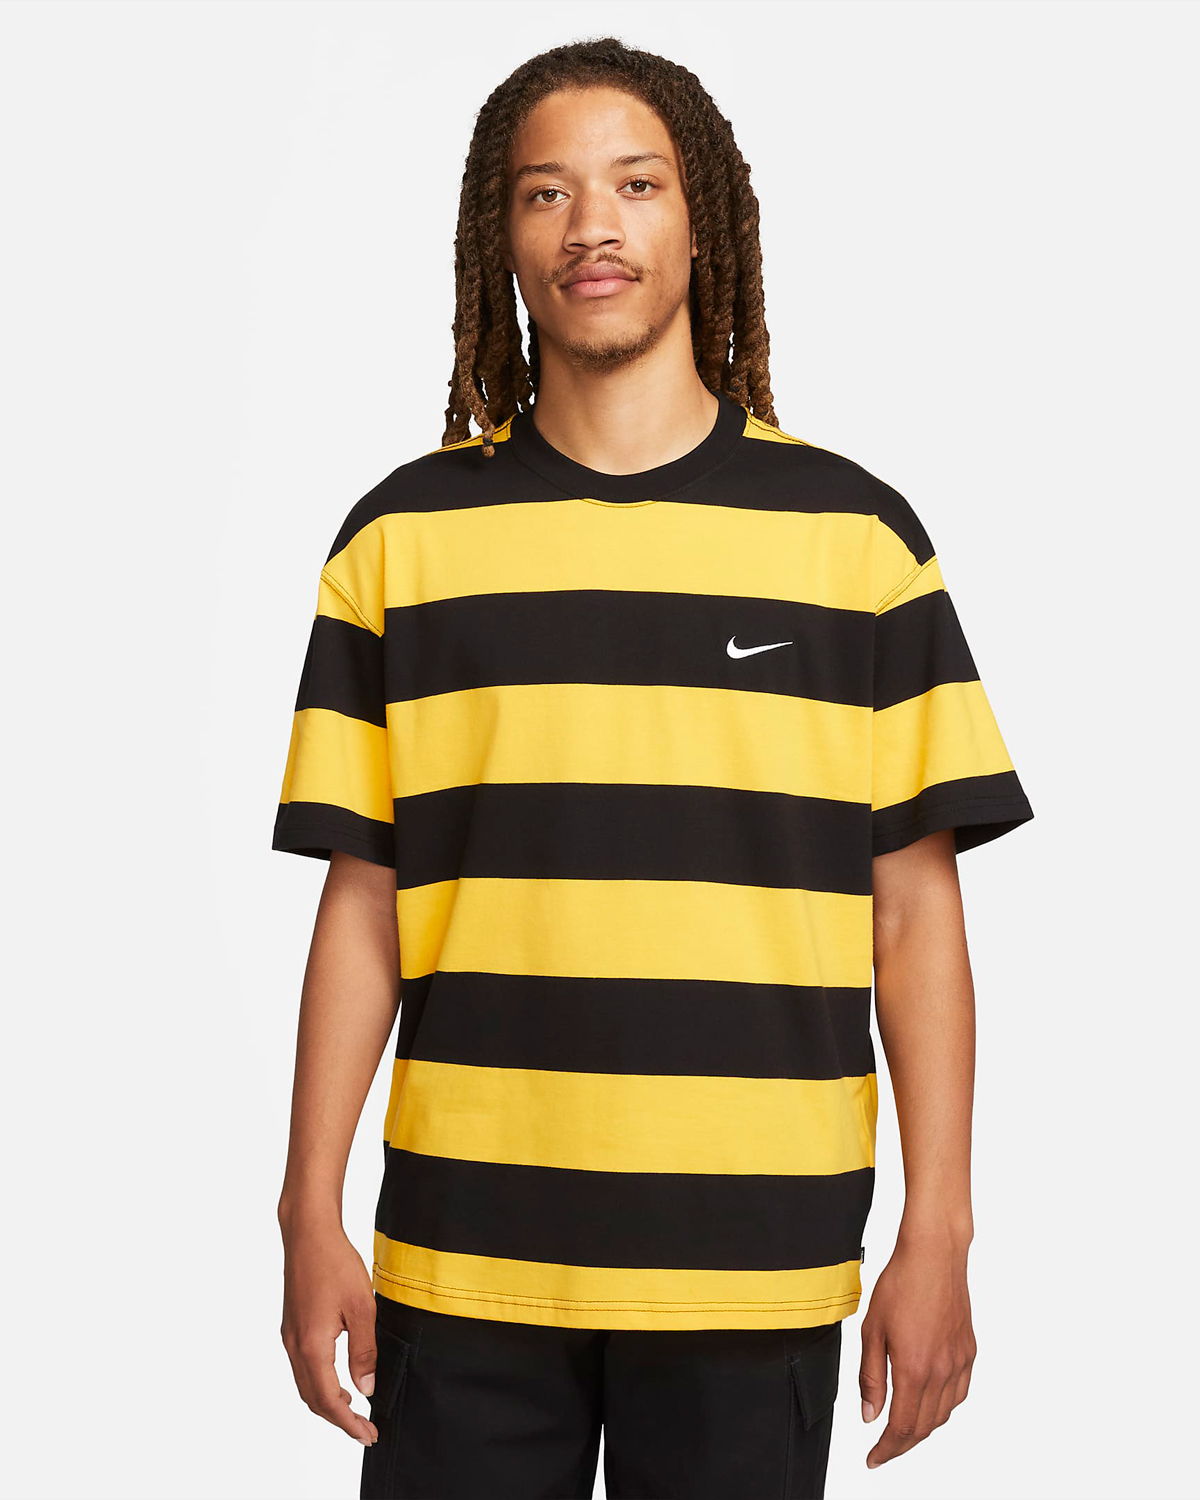 Nike-SB-Striped-T-Shirt-University-Gold-Black